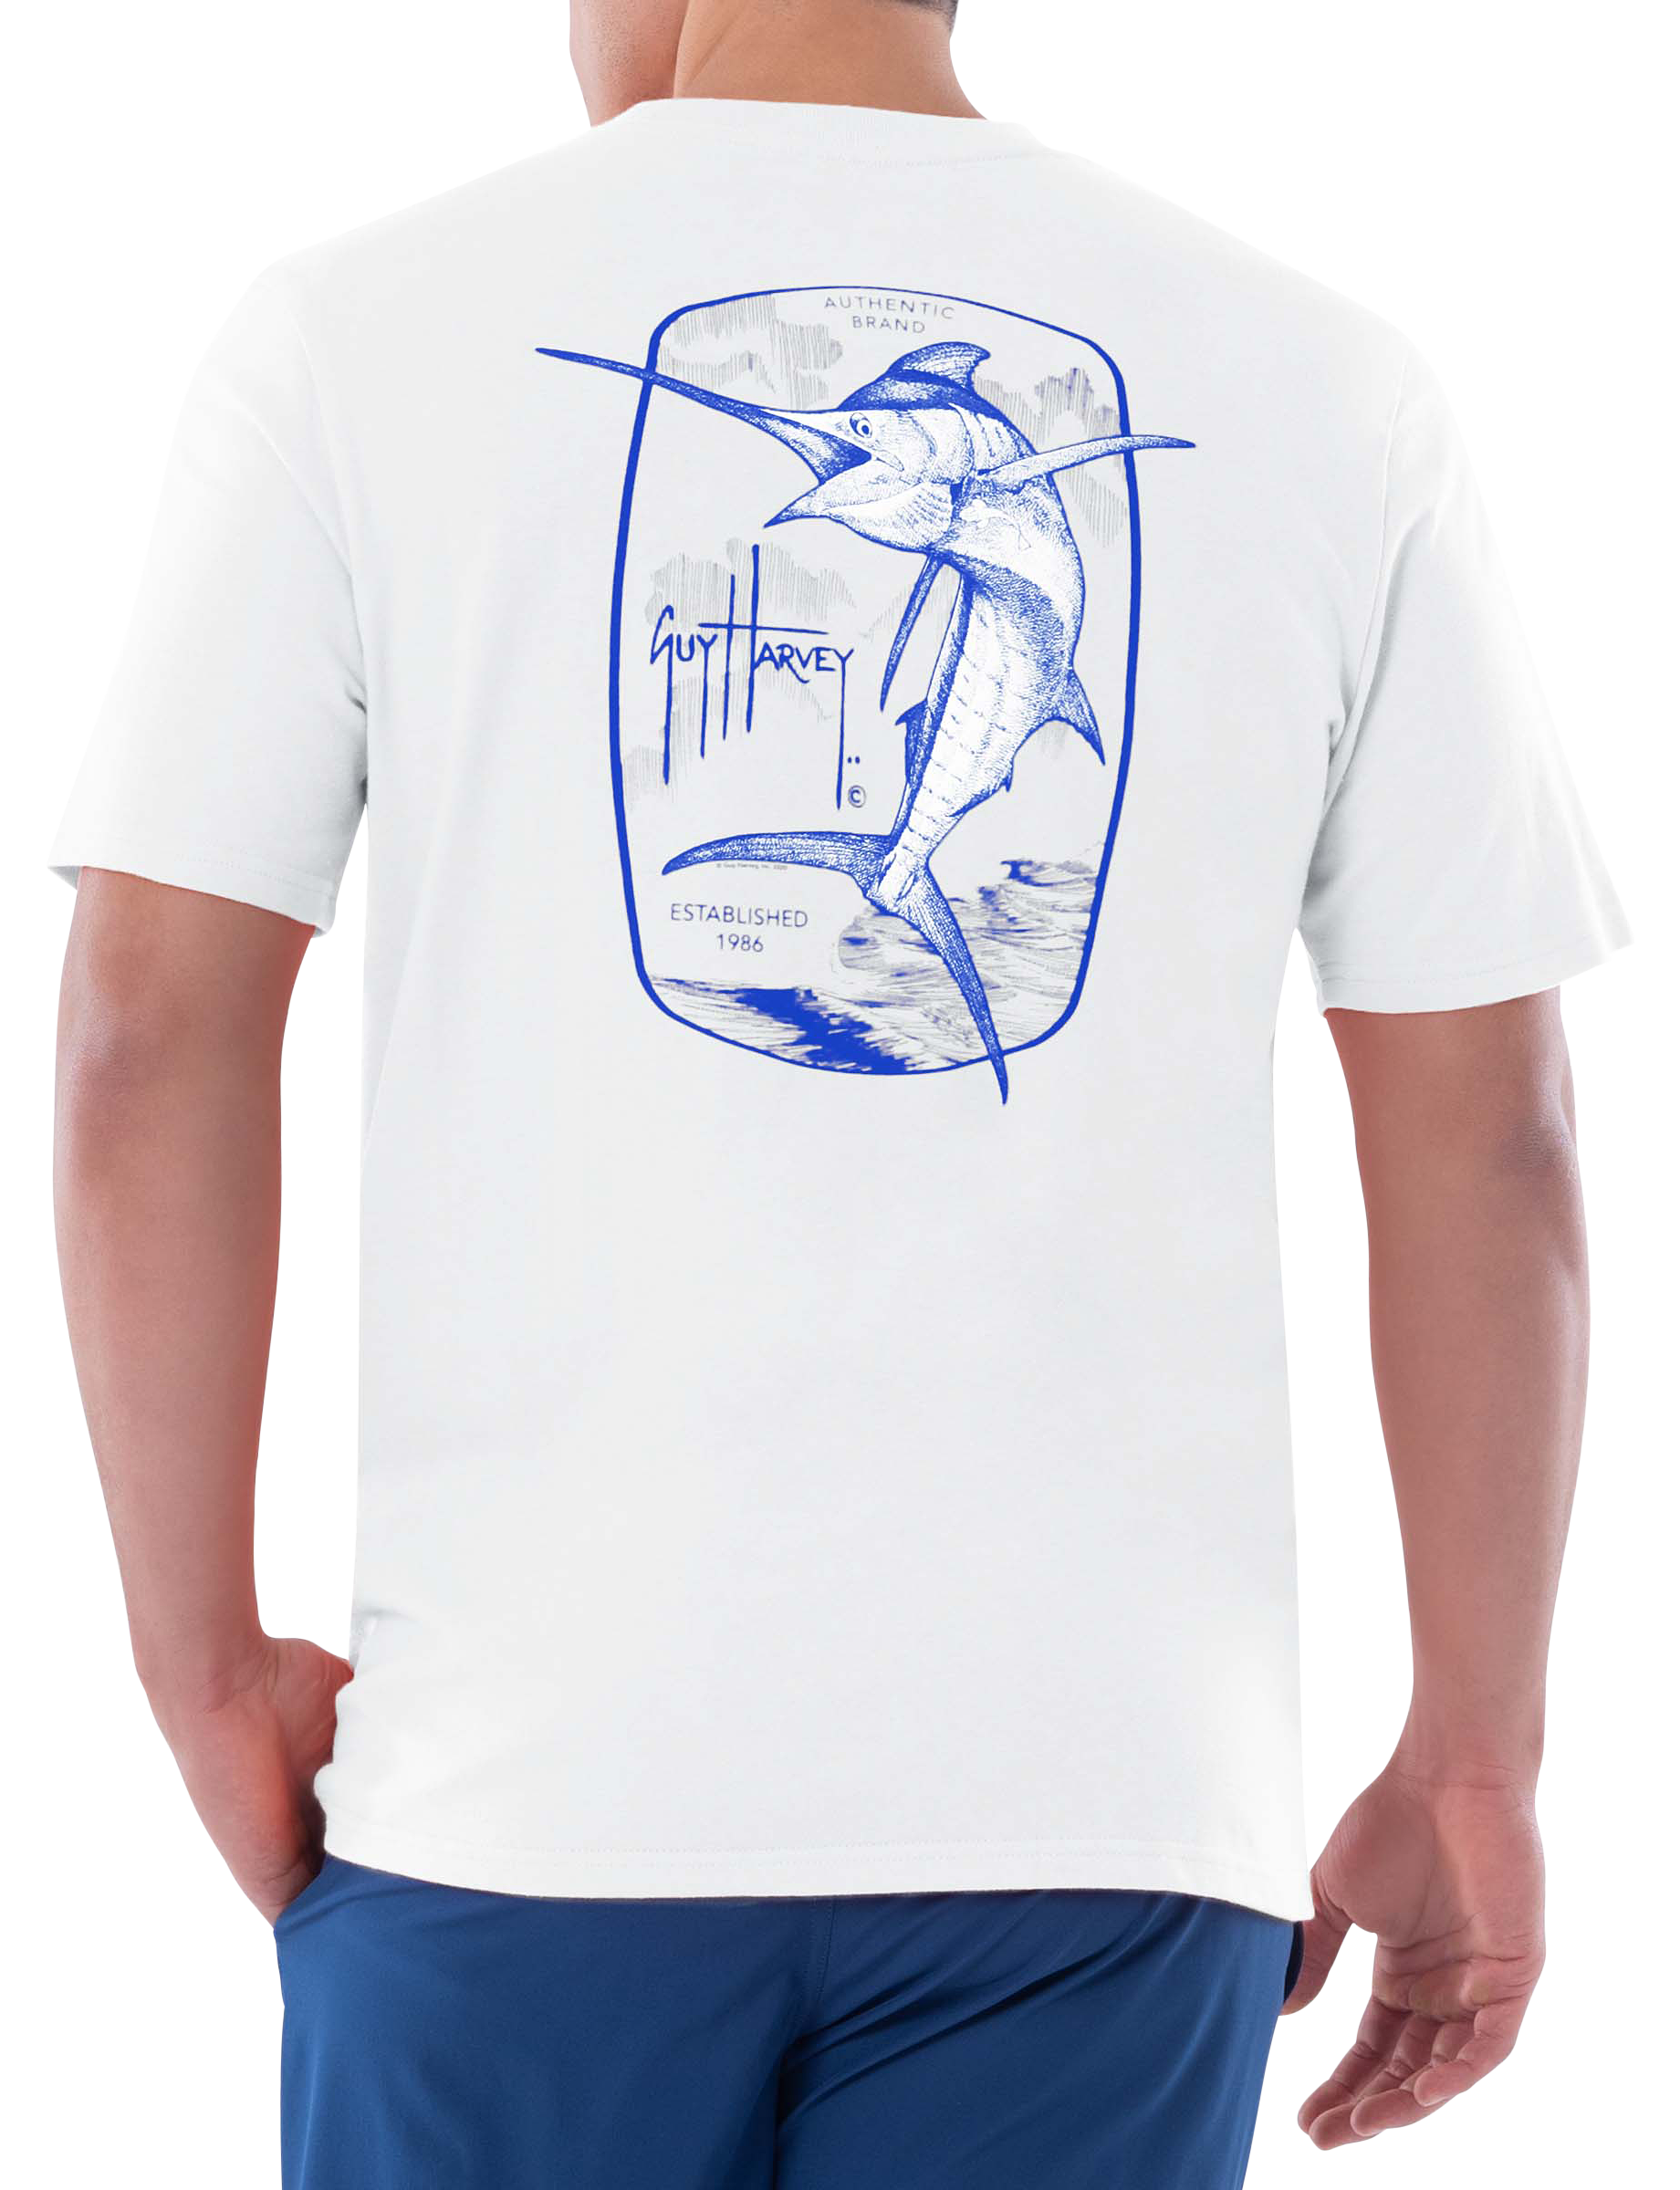 Guy Harvey Authentic Short-Sleeve T-Shirt for Men